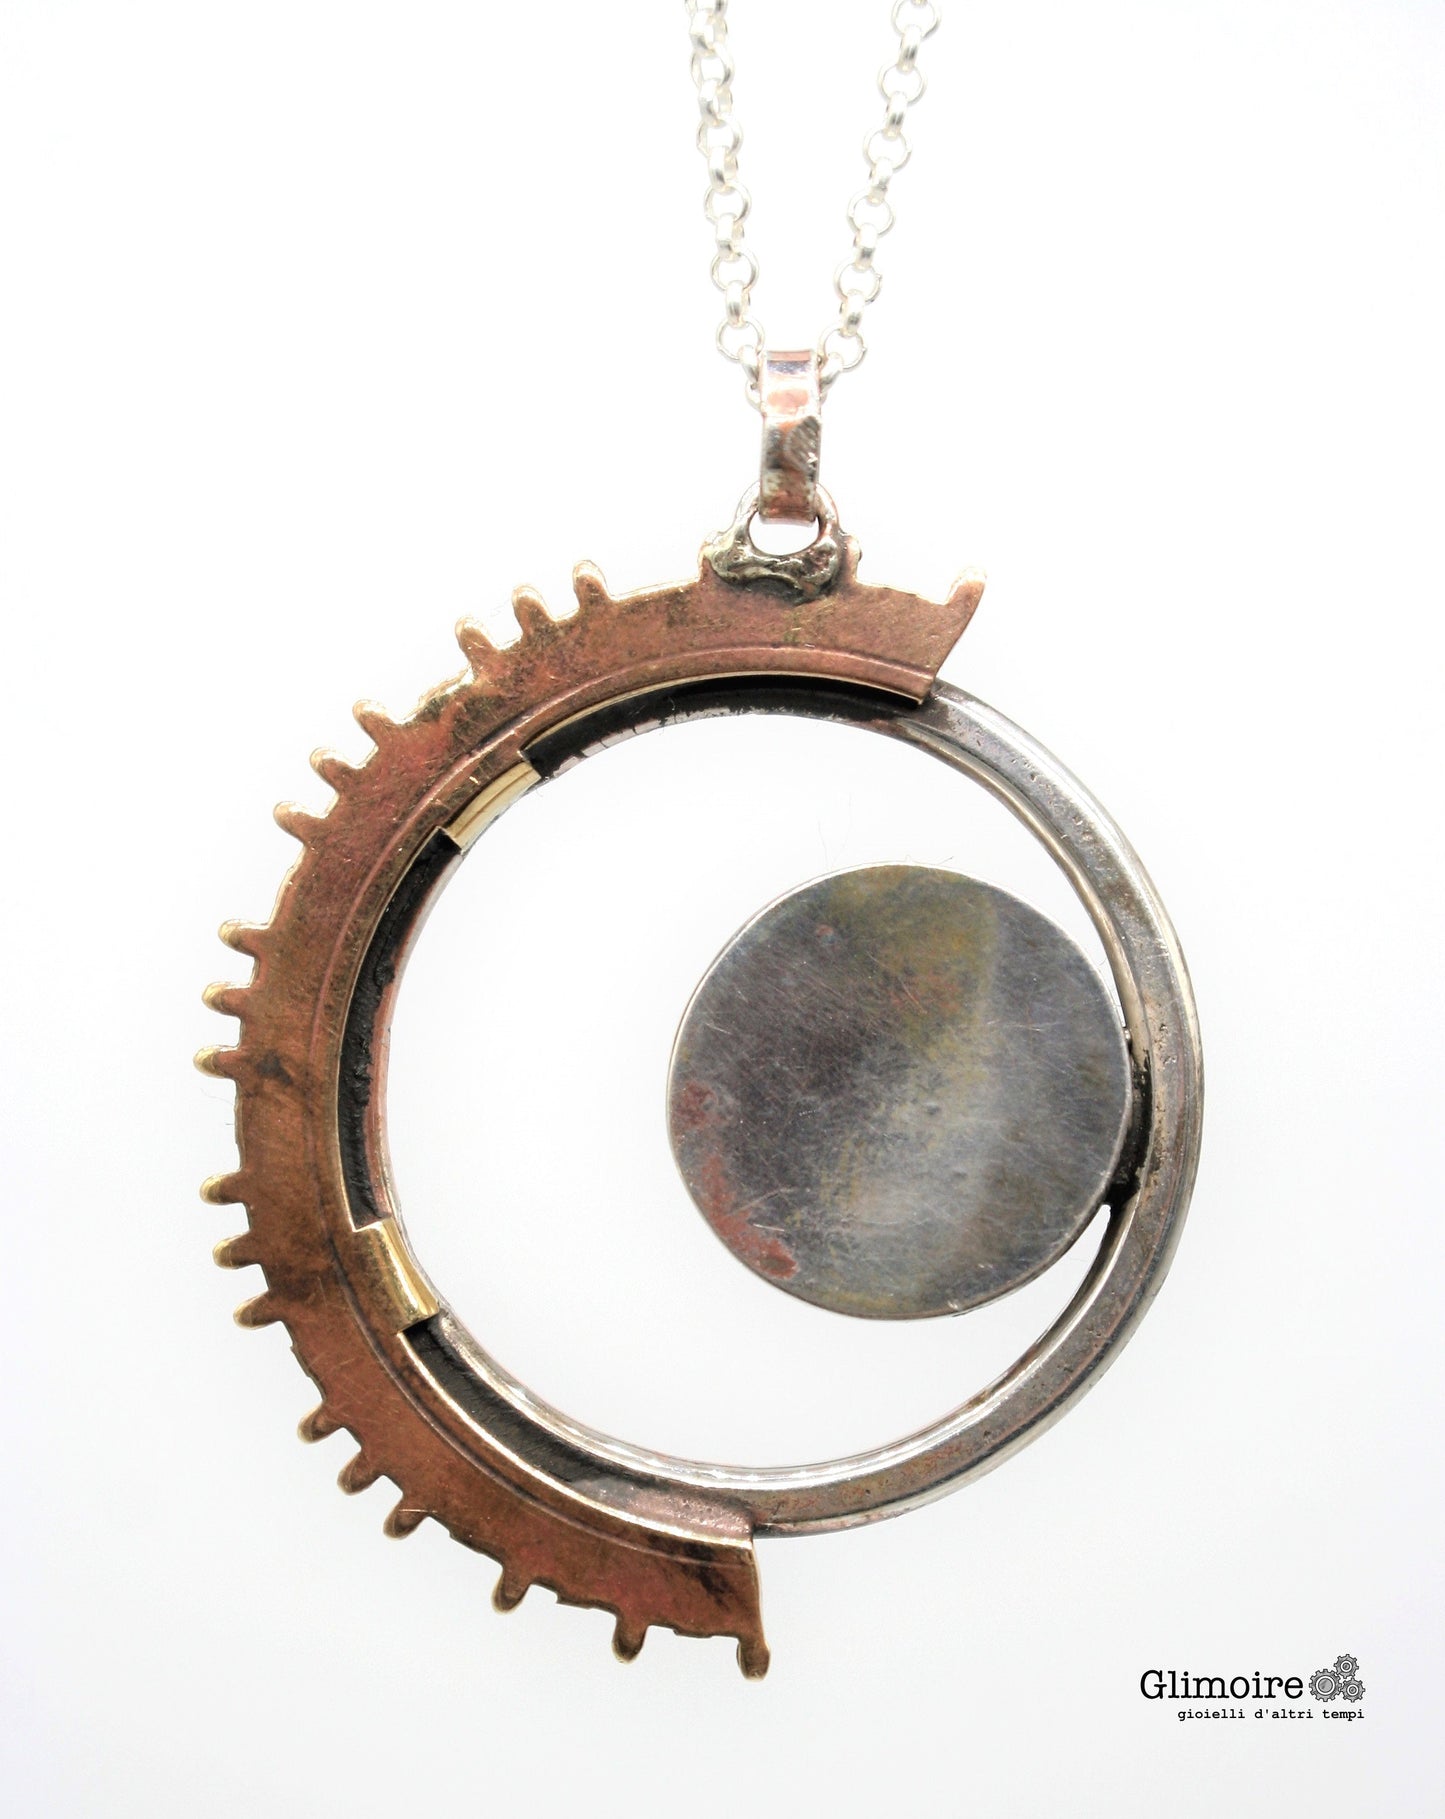 Eclissi - Medaglione con cerchio battuto e meccanismo d'orologio d'epoca e ingranaggio di orologio a pendolo art.295b - Glimoire